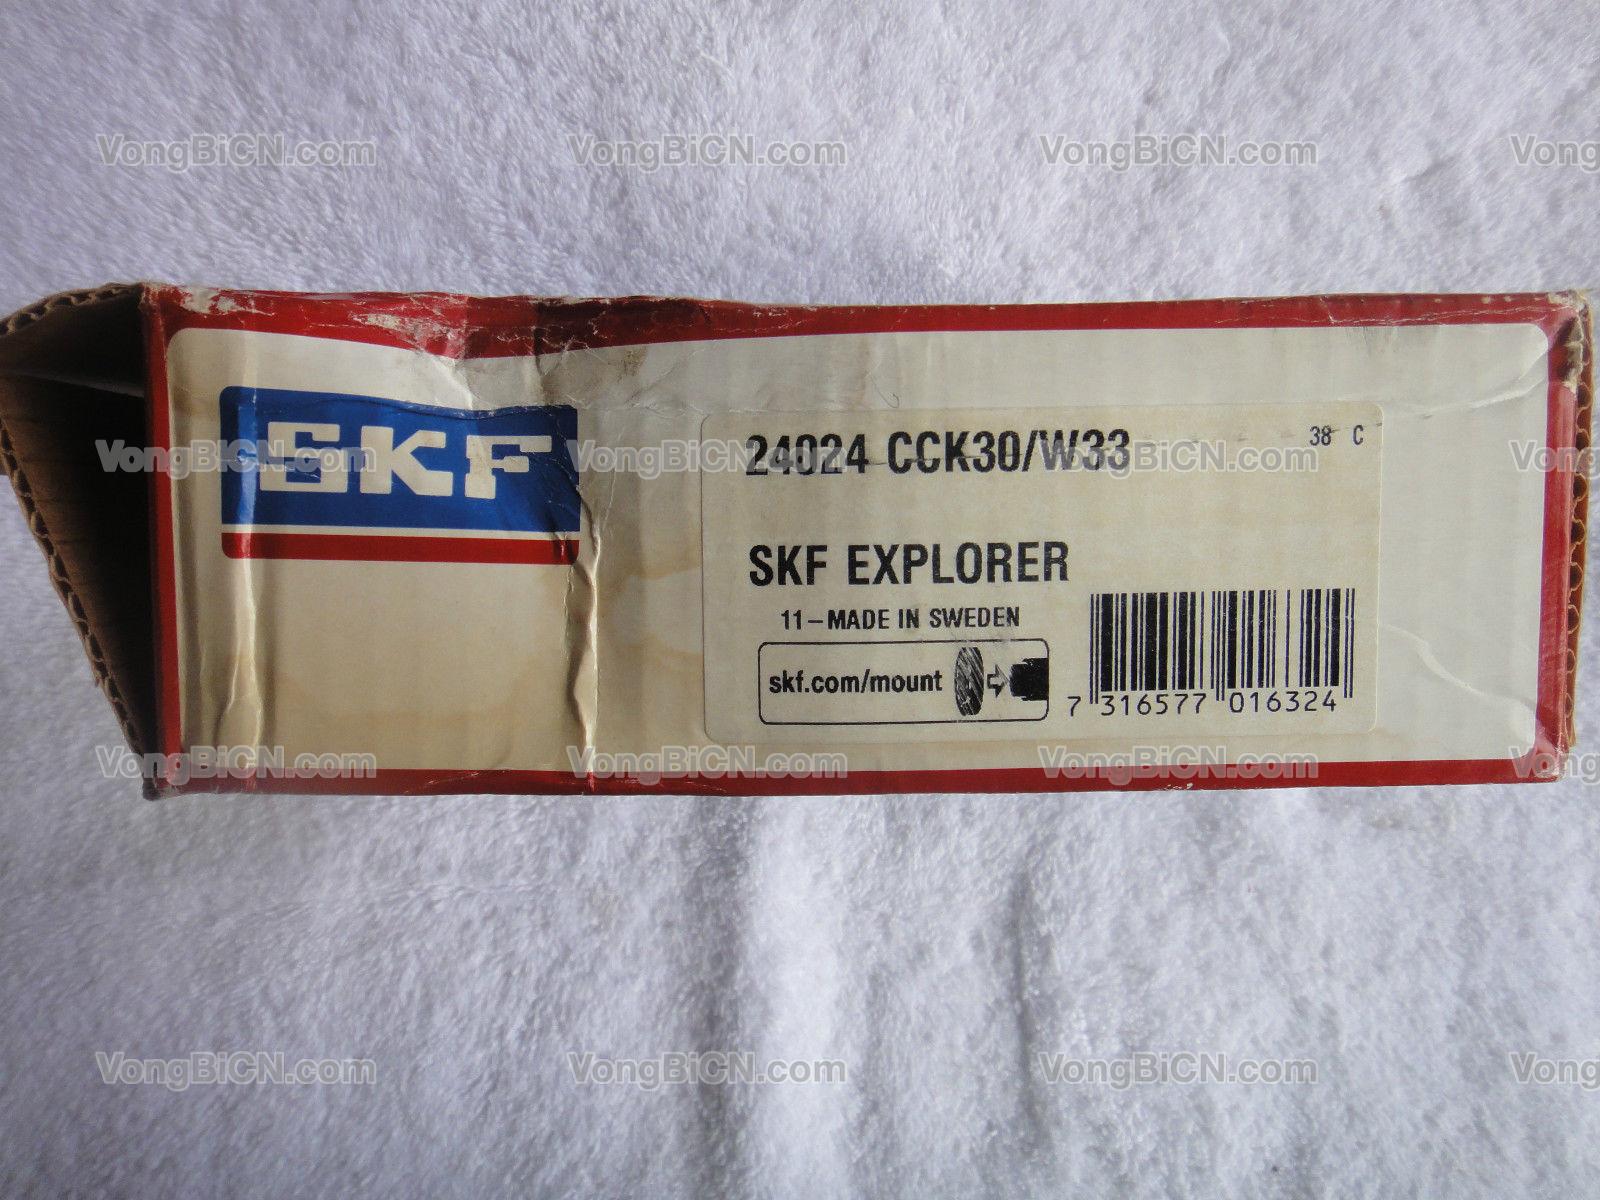 SKF 24024 CCK30/W33